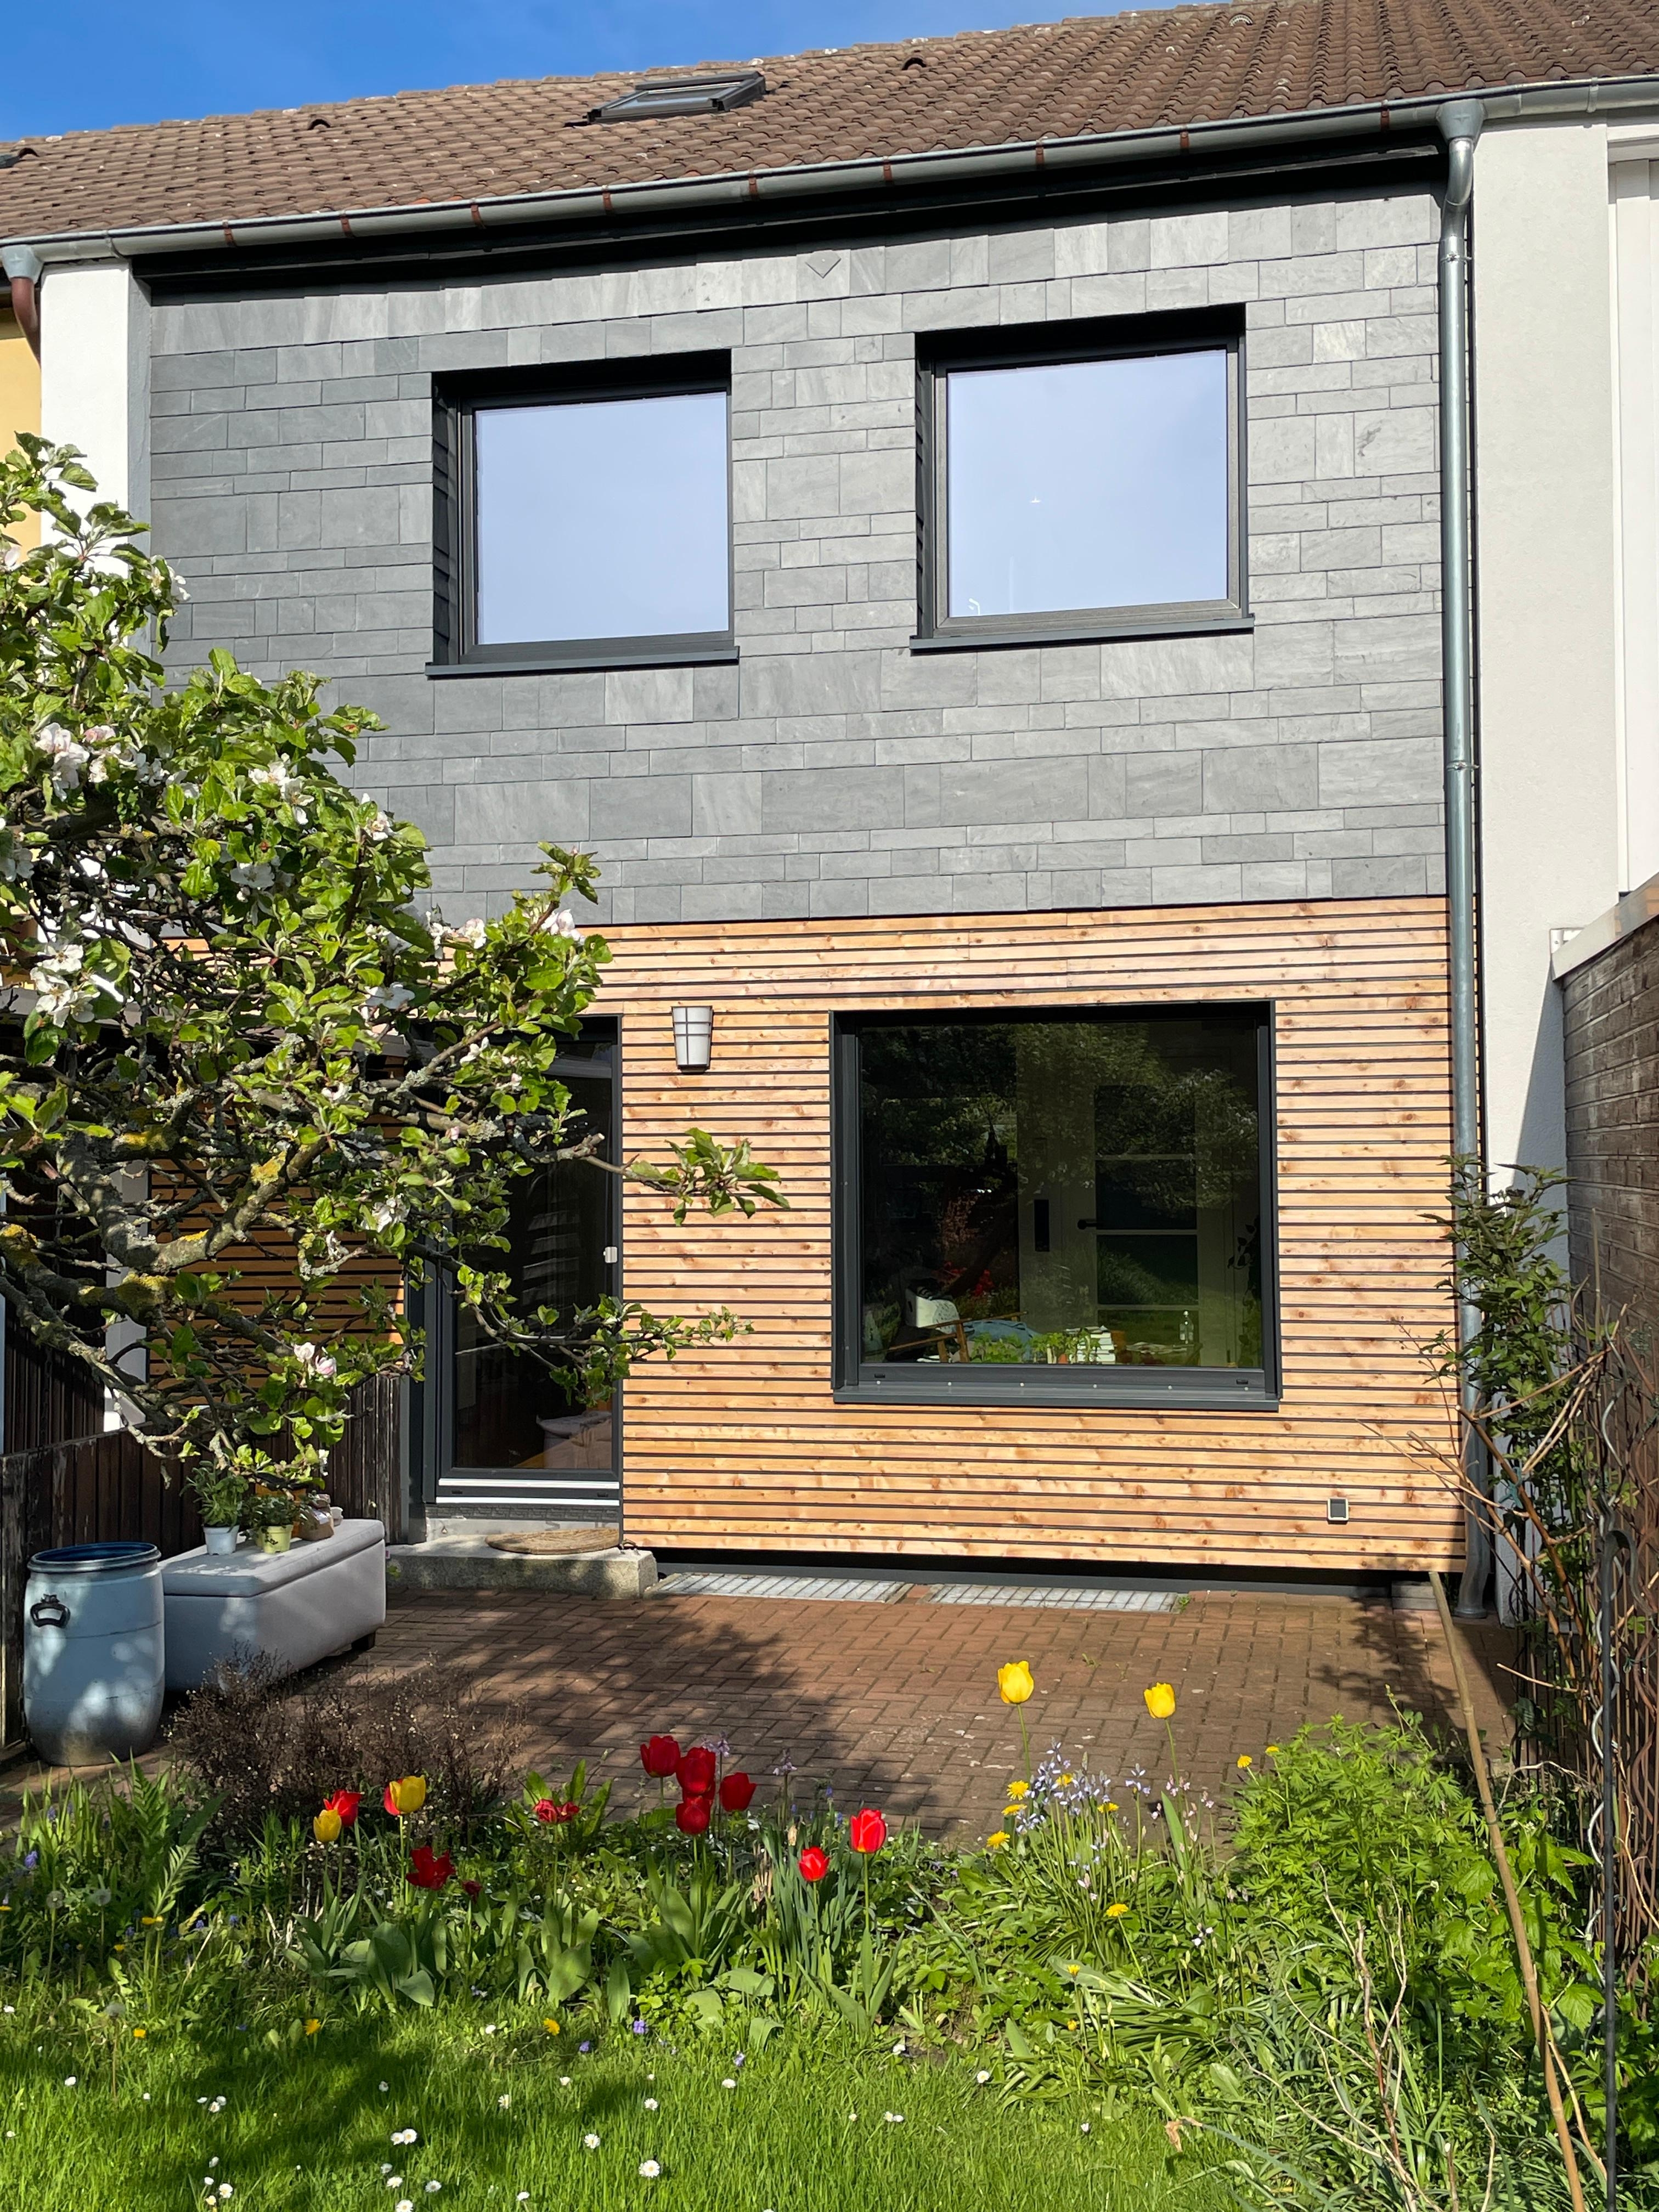 Fassadenliebe ♥️ im hinteren Garten 

#fassade #holz #holzfassade #reihenhaus #garten #sanierung